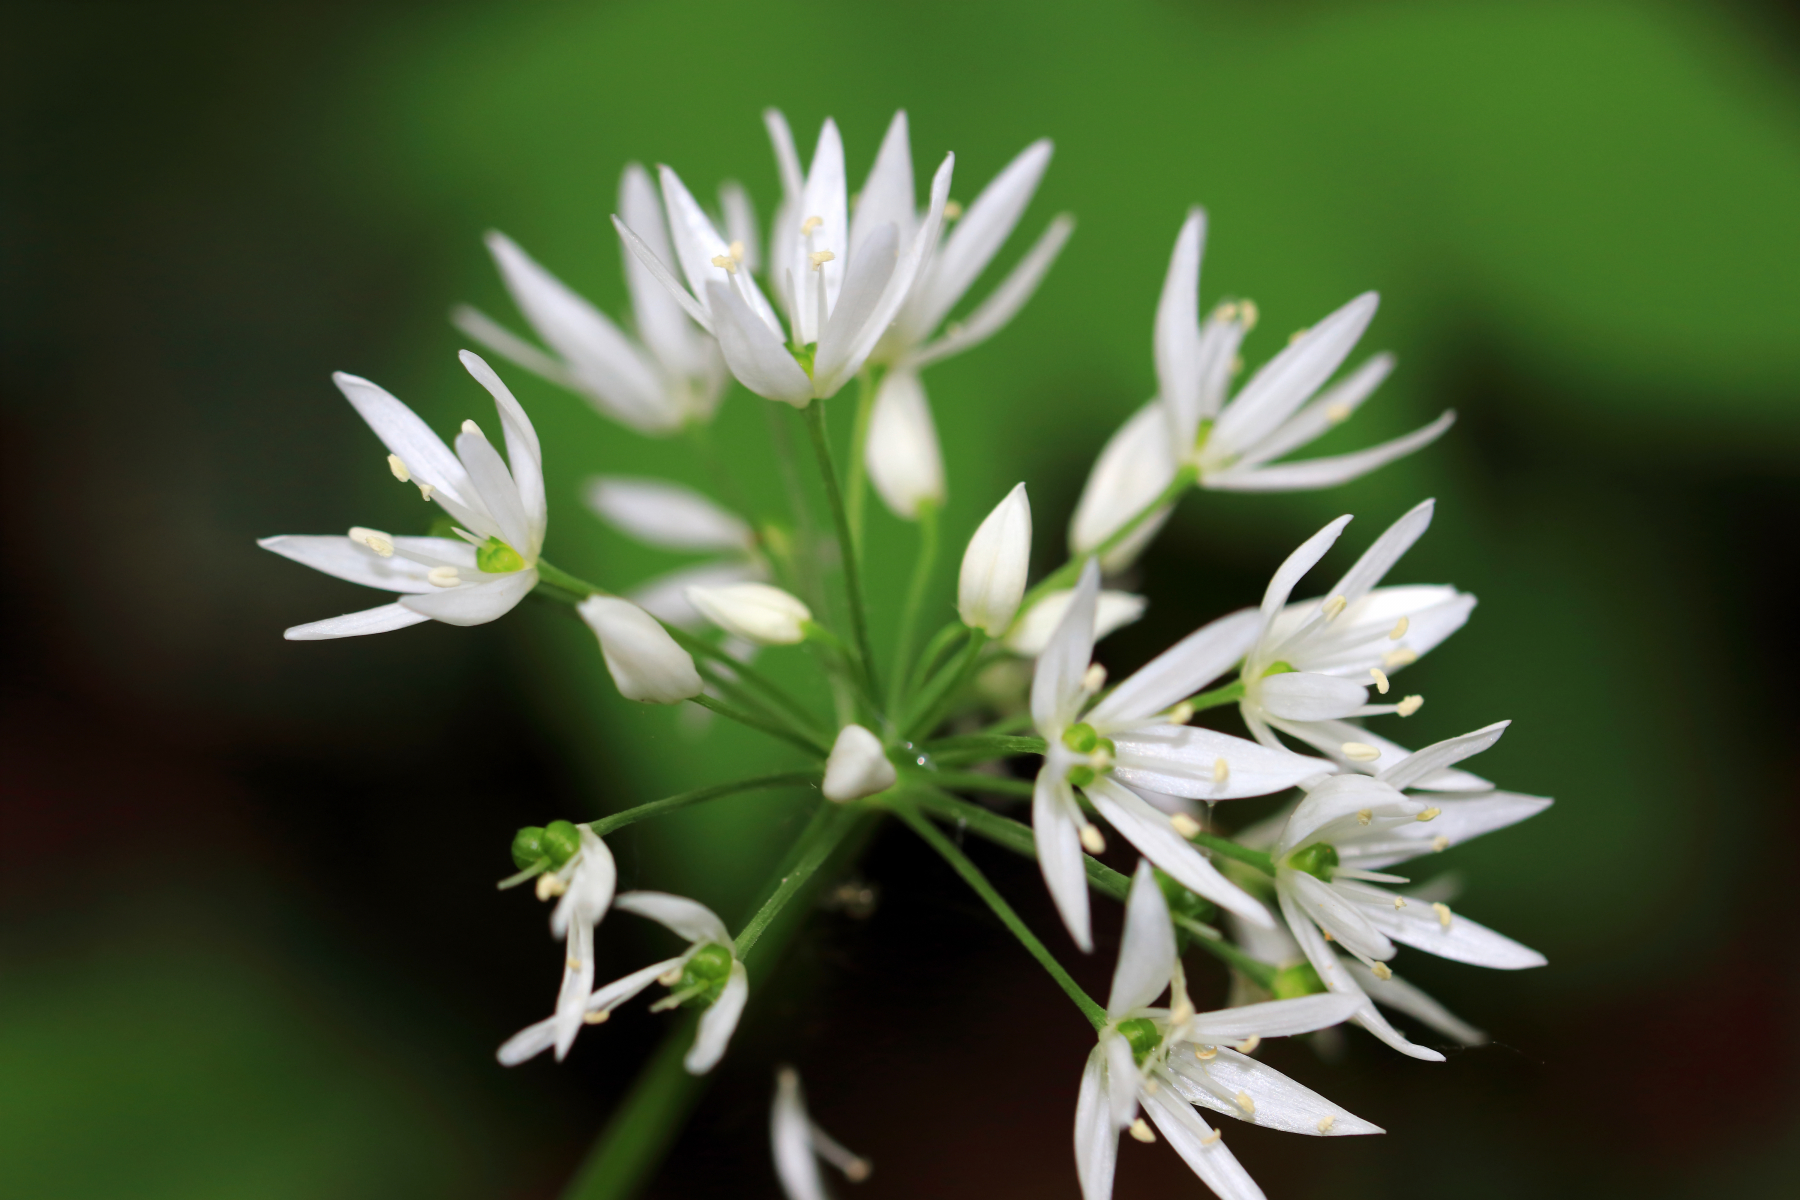 Ramsløk har stjerneformede, hvite blomster i en flat eller halvkuleformet skjerm.